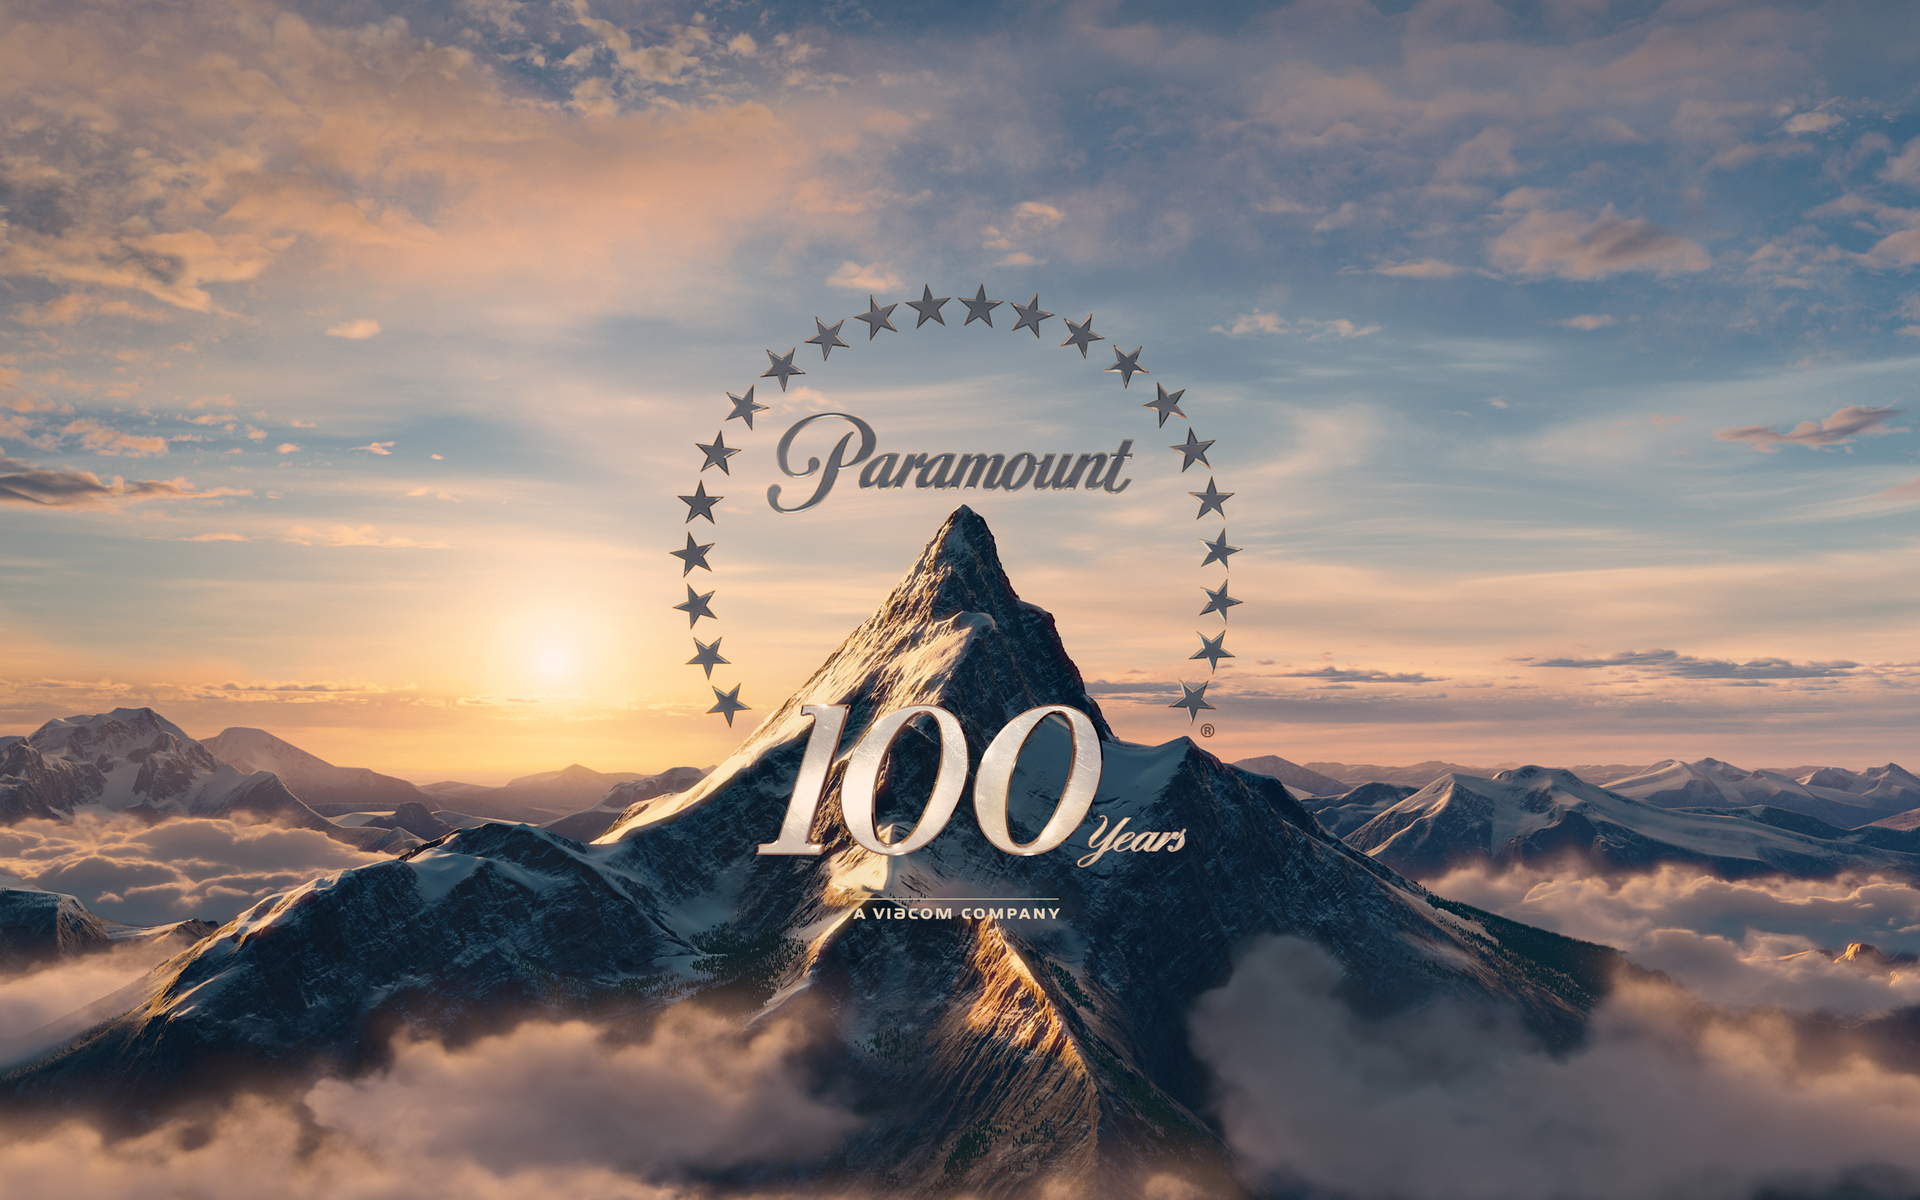 Descargar fondos de escritorio de Paramount 100 Años HD